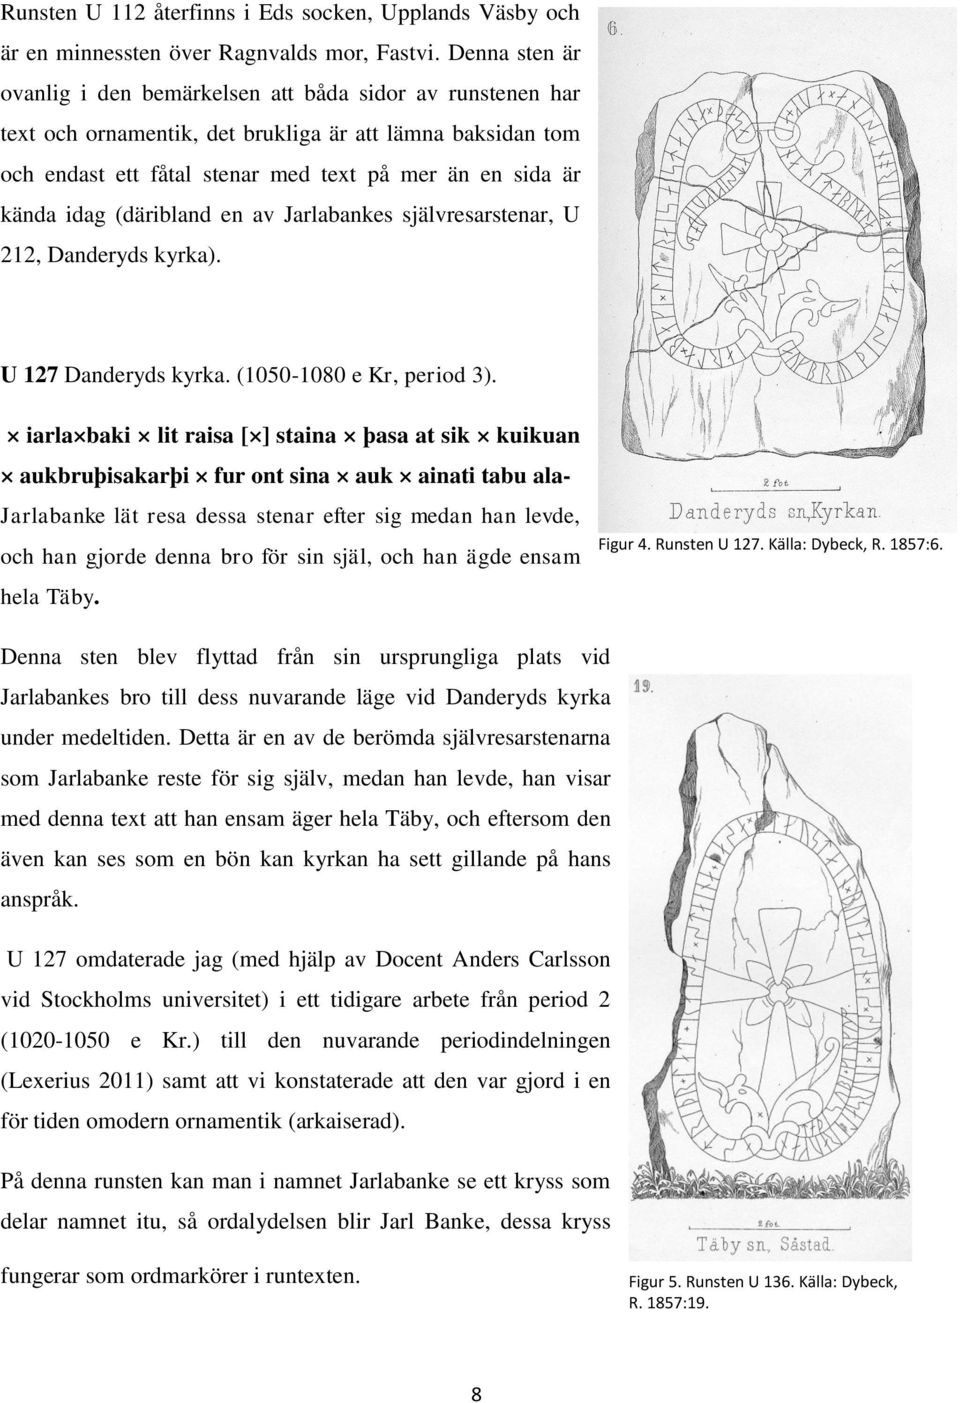 idag (däribland en av Jarlabankes självresarstenar, U 212, Danderyds kyrka). U 127 Danderyds kyrka. (1050-1080 e Kr, period 3).